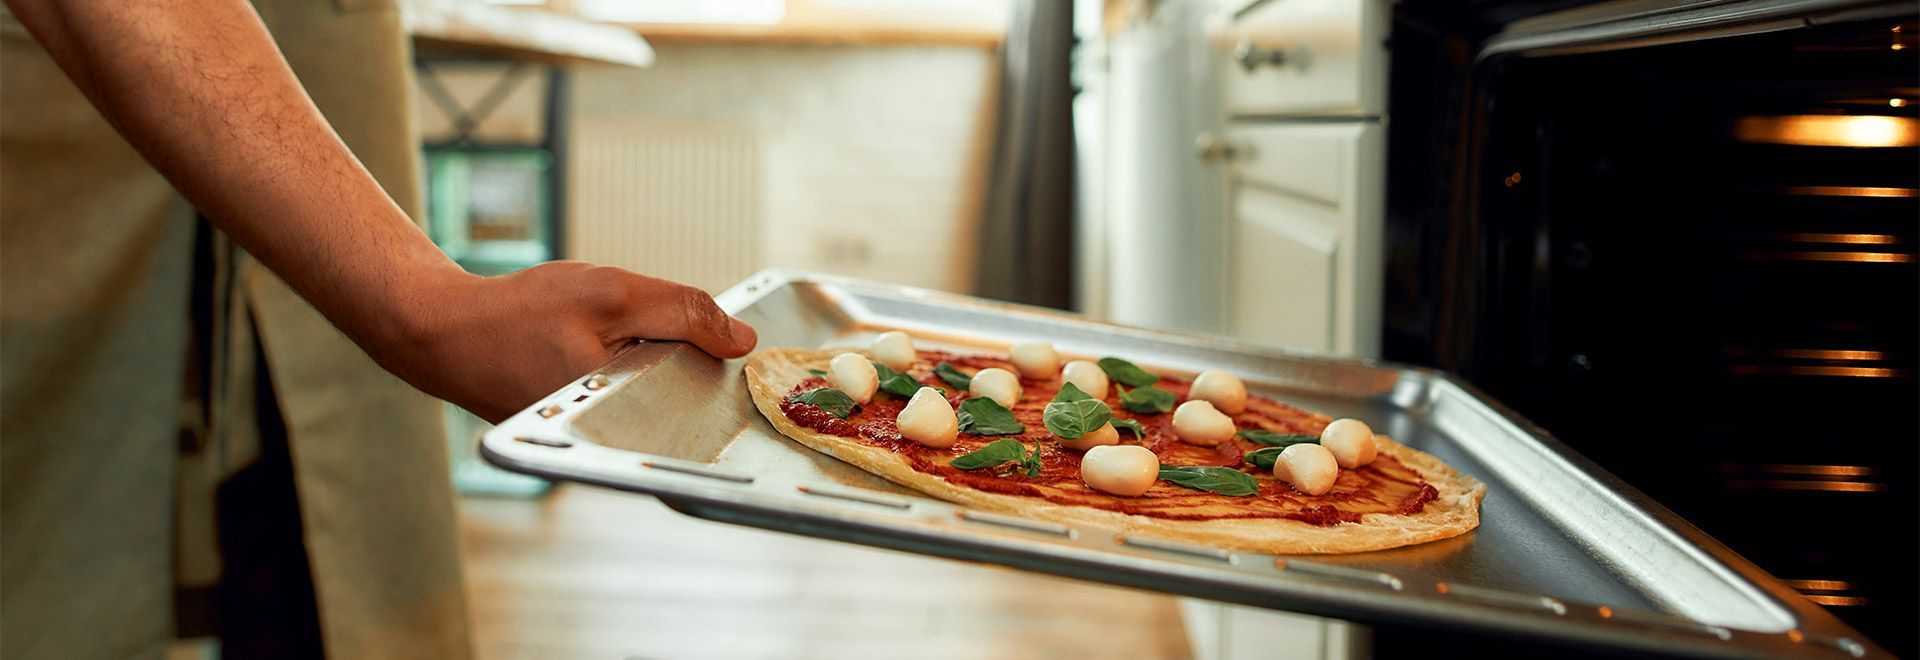 Tôle ou pierre à pizza, faites votre choix!